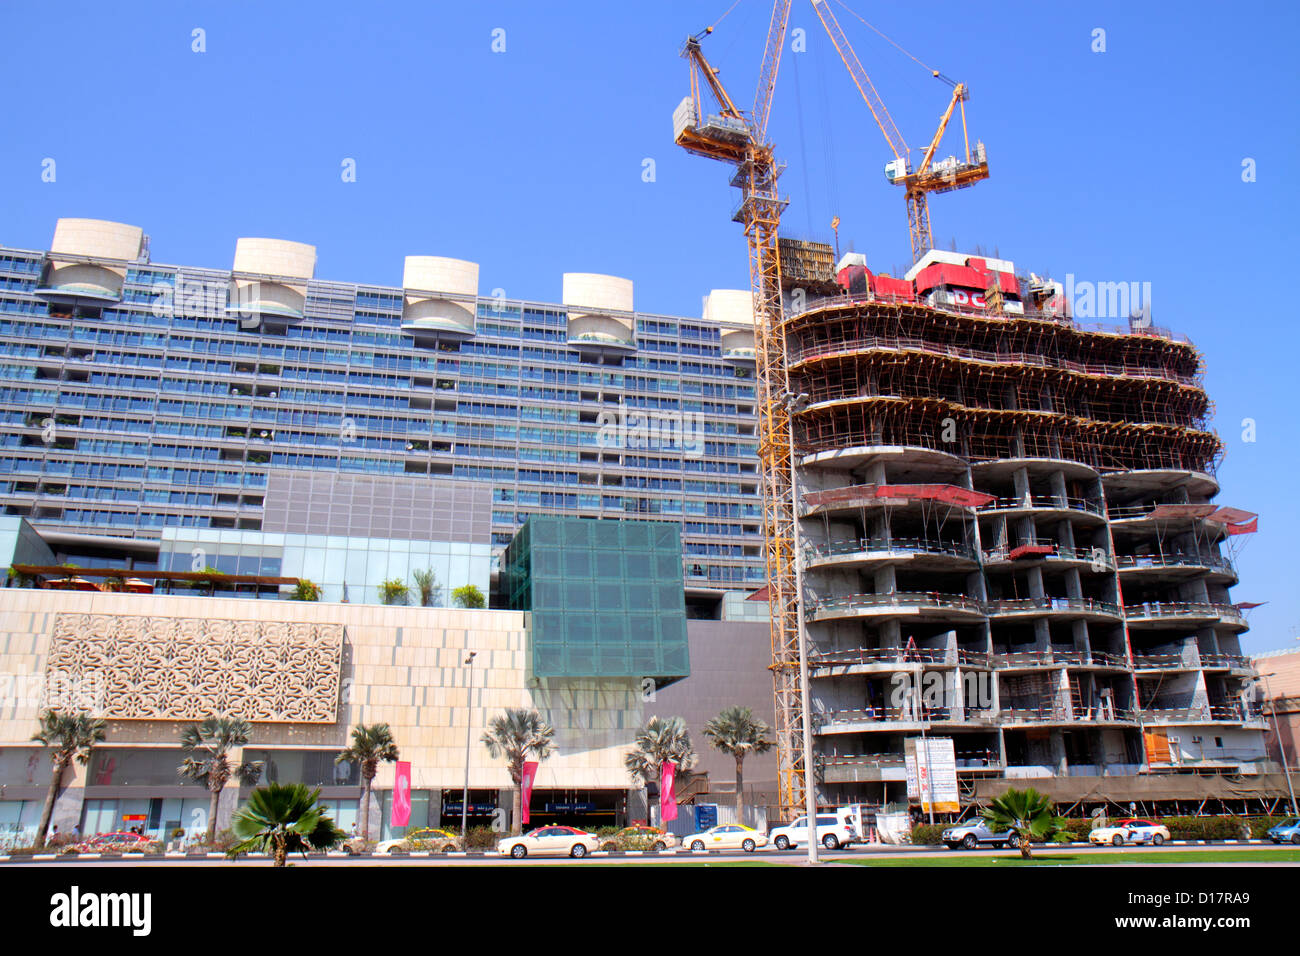 Dubai VAE, Vereinigte Arabische Emirate, Sheikh Khalifa bin Zayed Road, Gebäude, unter Neubaustelle Baumeister, Kran, Straßenszene, Bus, Bus, Burjum Stockfoto